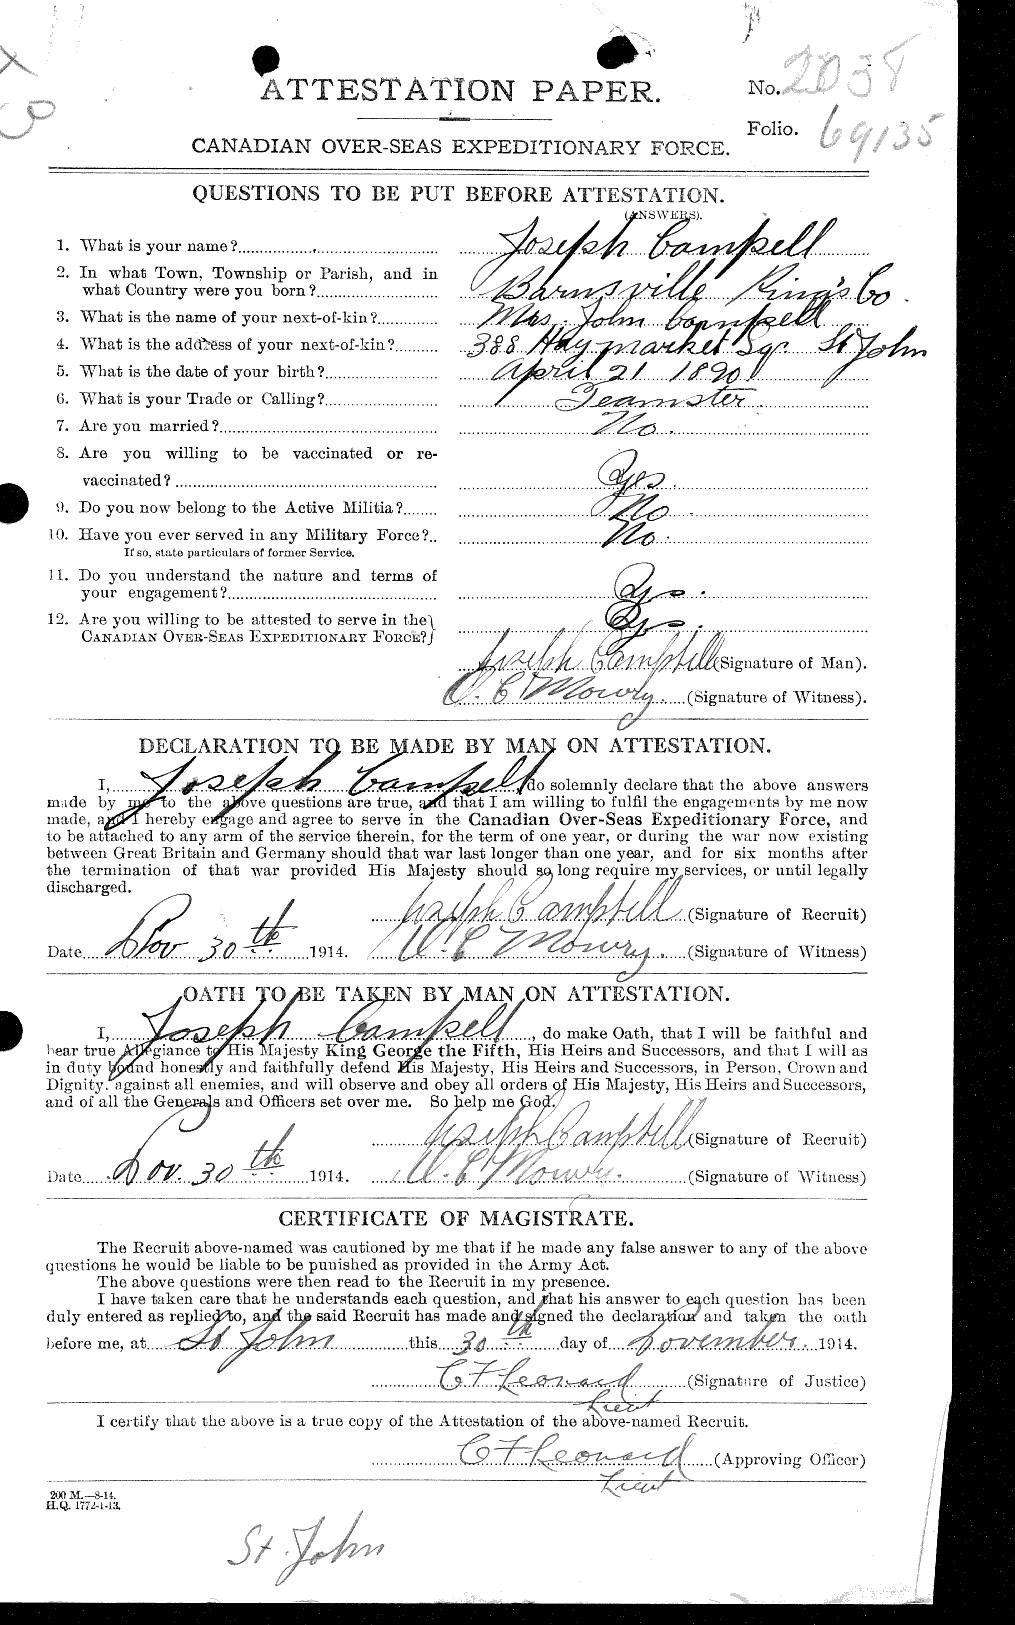 Dossiers du Personnel de la Première Guerre mondiale - CEC 004964a